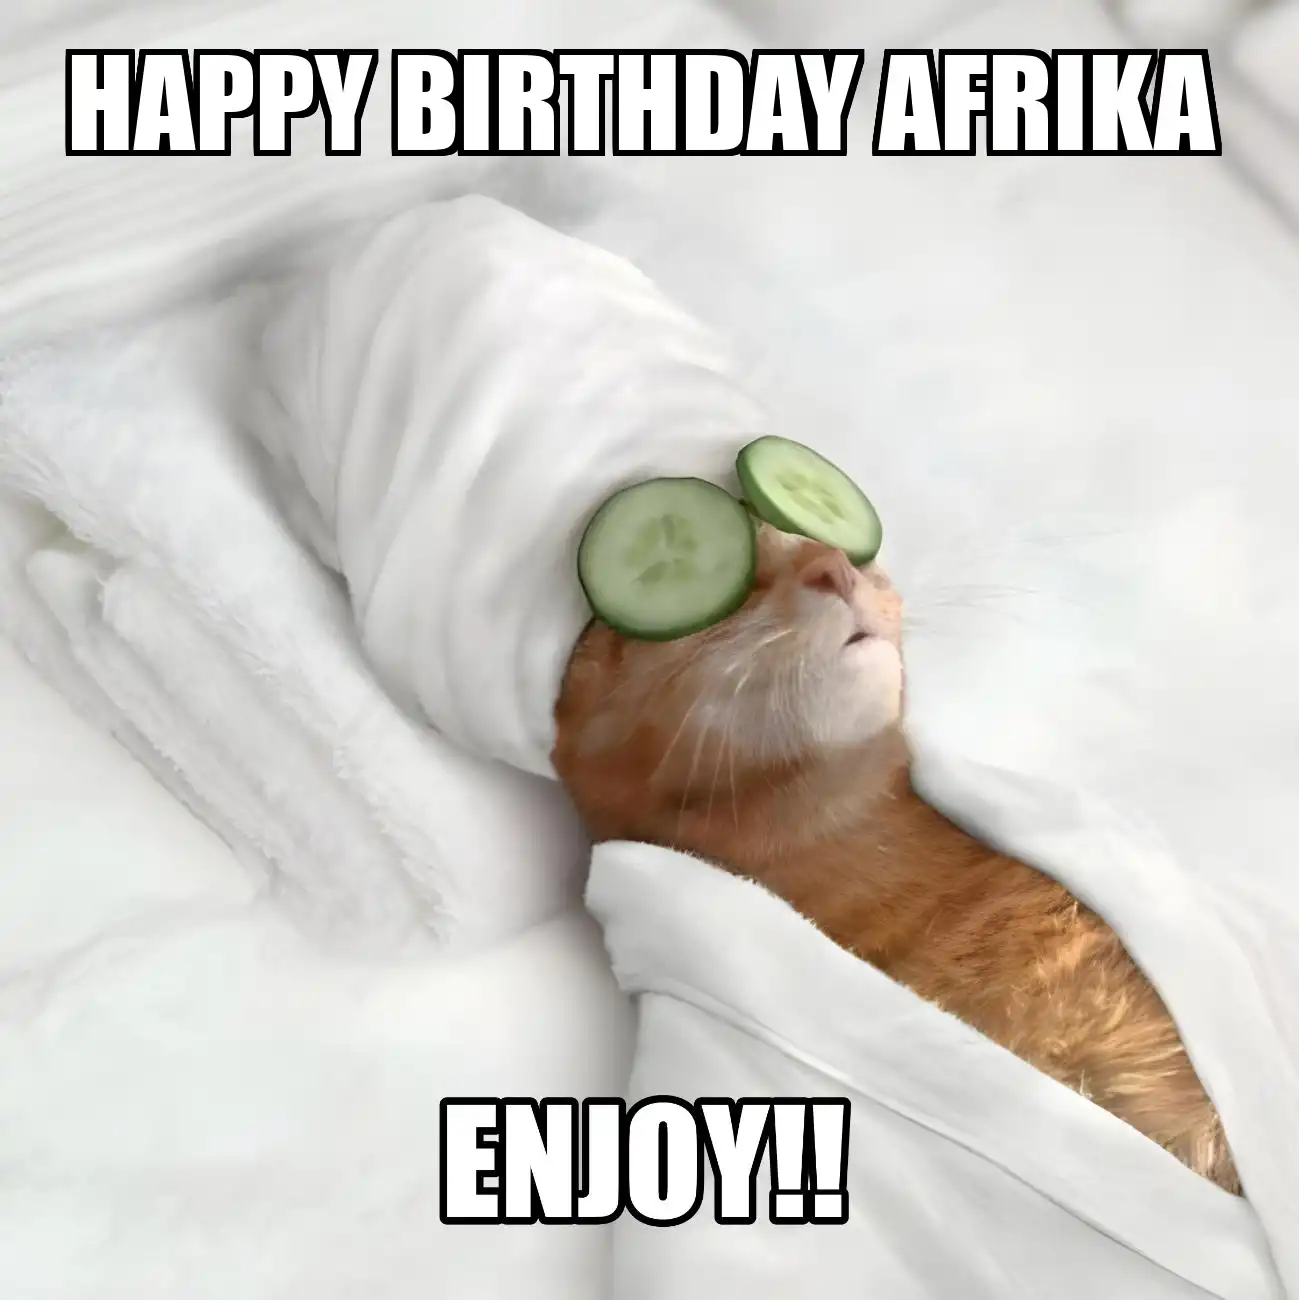 Happy Birthday Afrika Enjoy Cat Meme